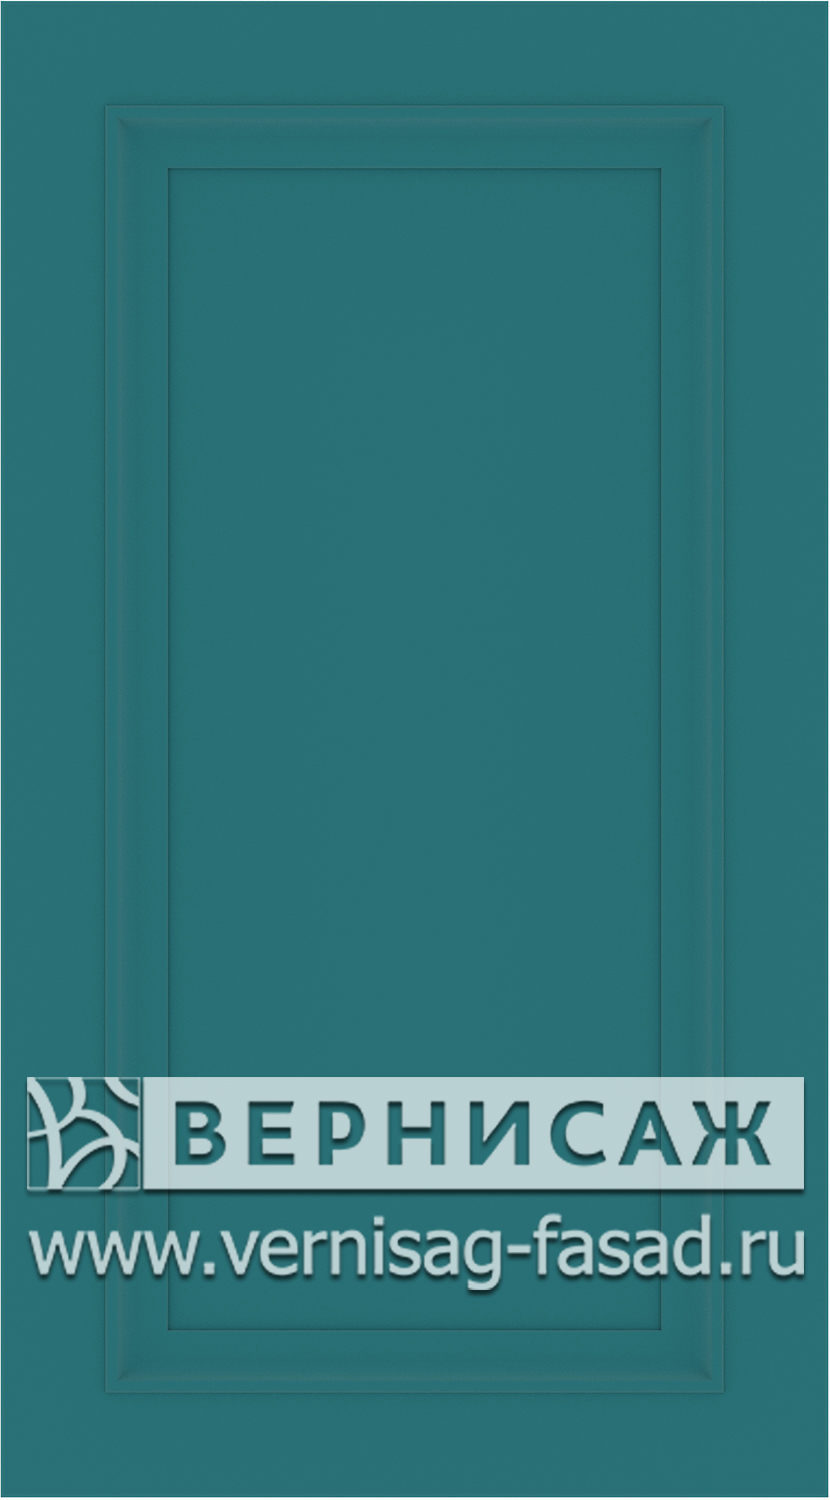 Фасады в пленке ПВХ, Фрезеровка № W1, цвет Морская волна